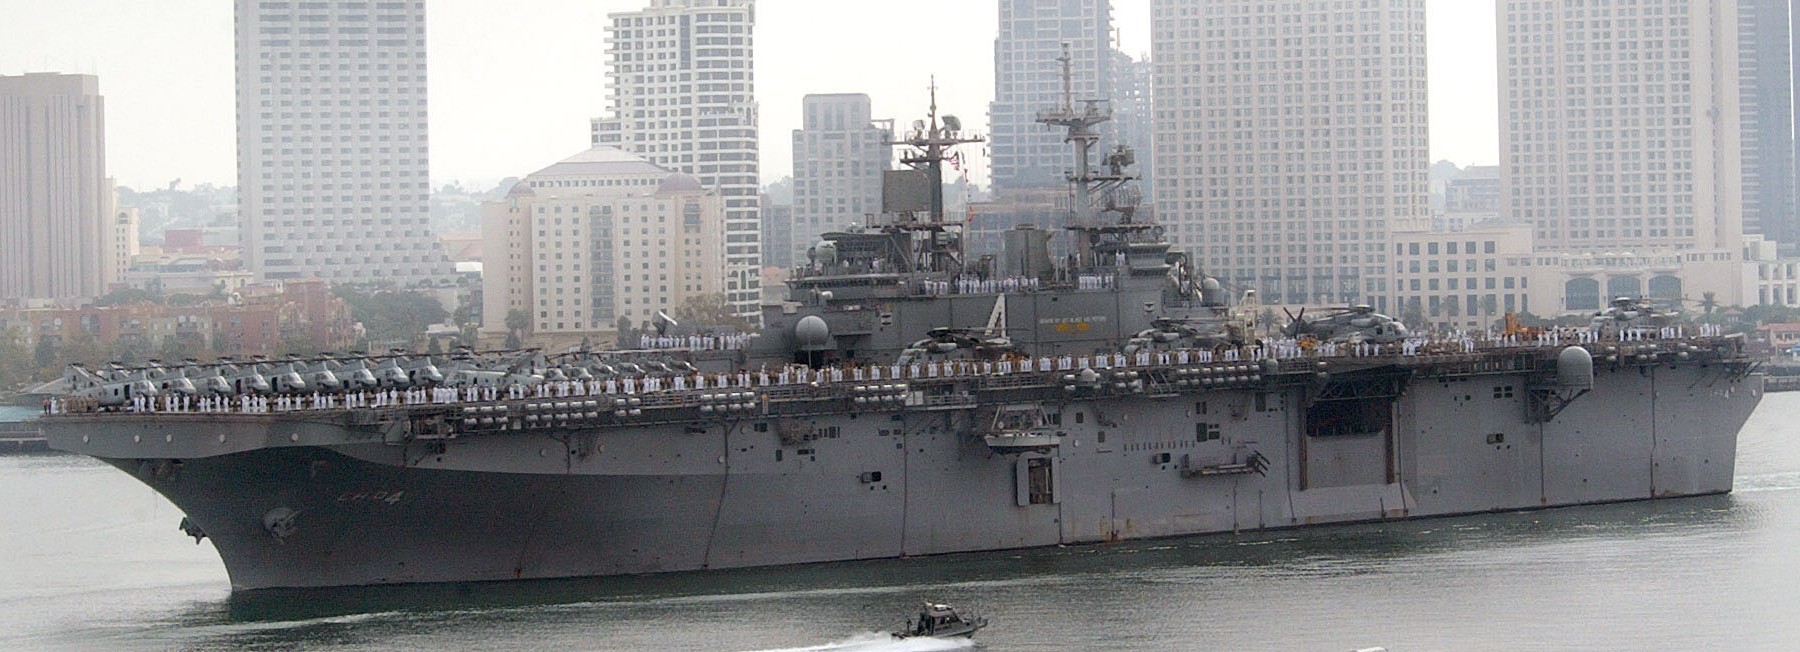 lhd-4 uss boxer wasp class amphibious assault ship dock landing us navy marines hmm-165 departing san diego 27